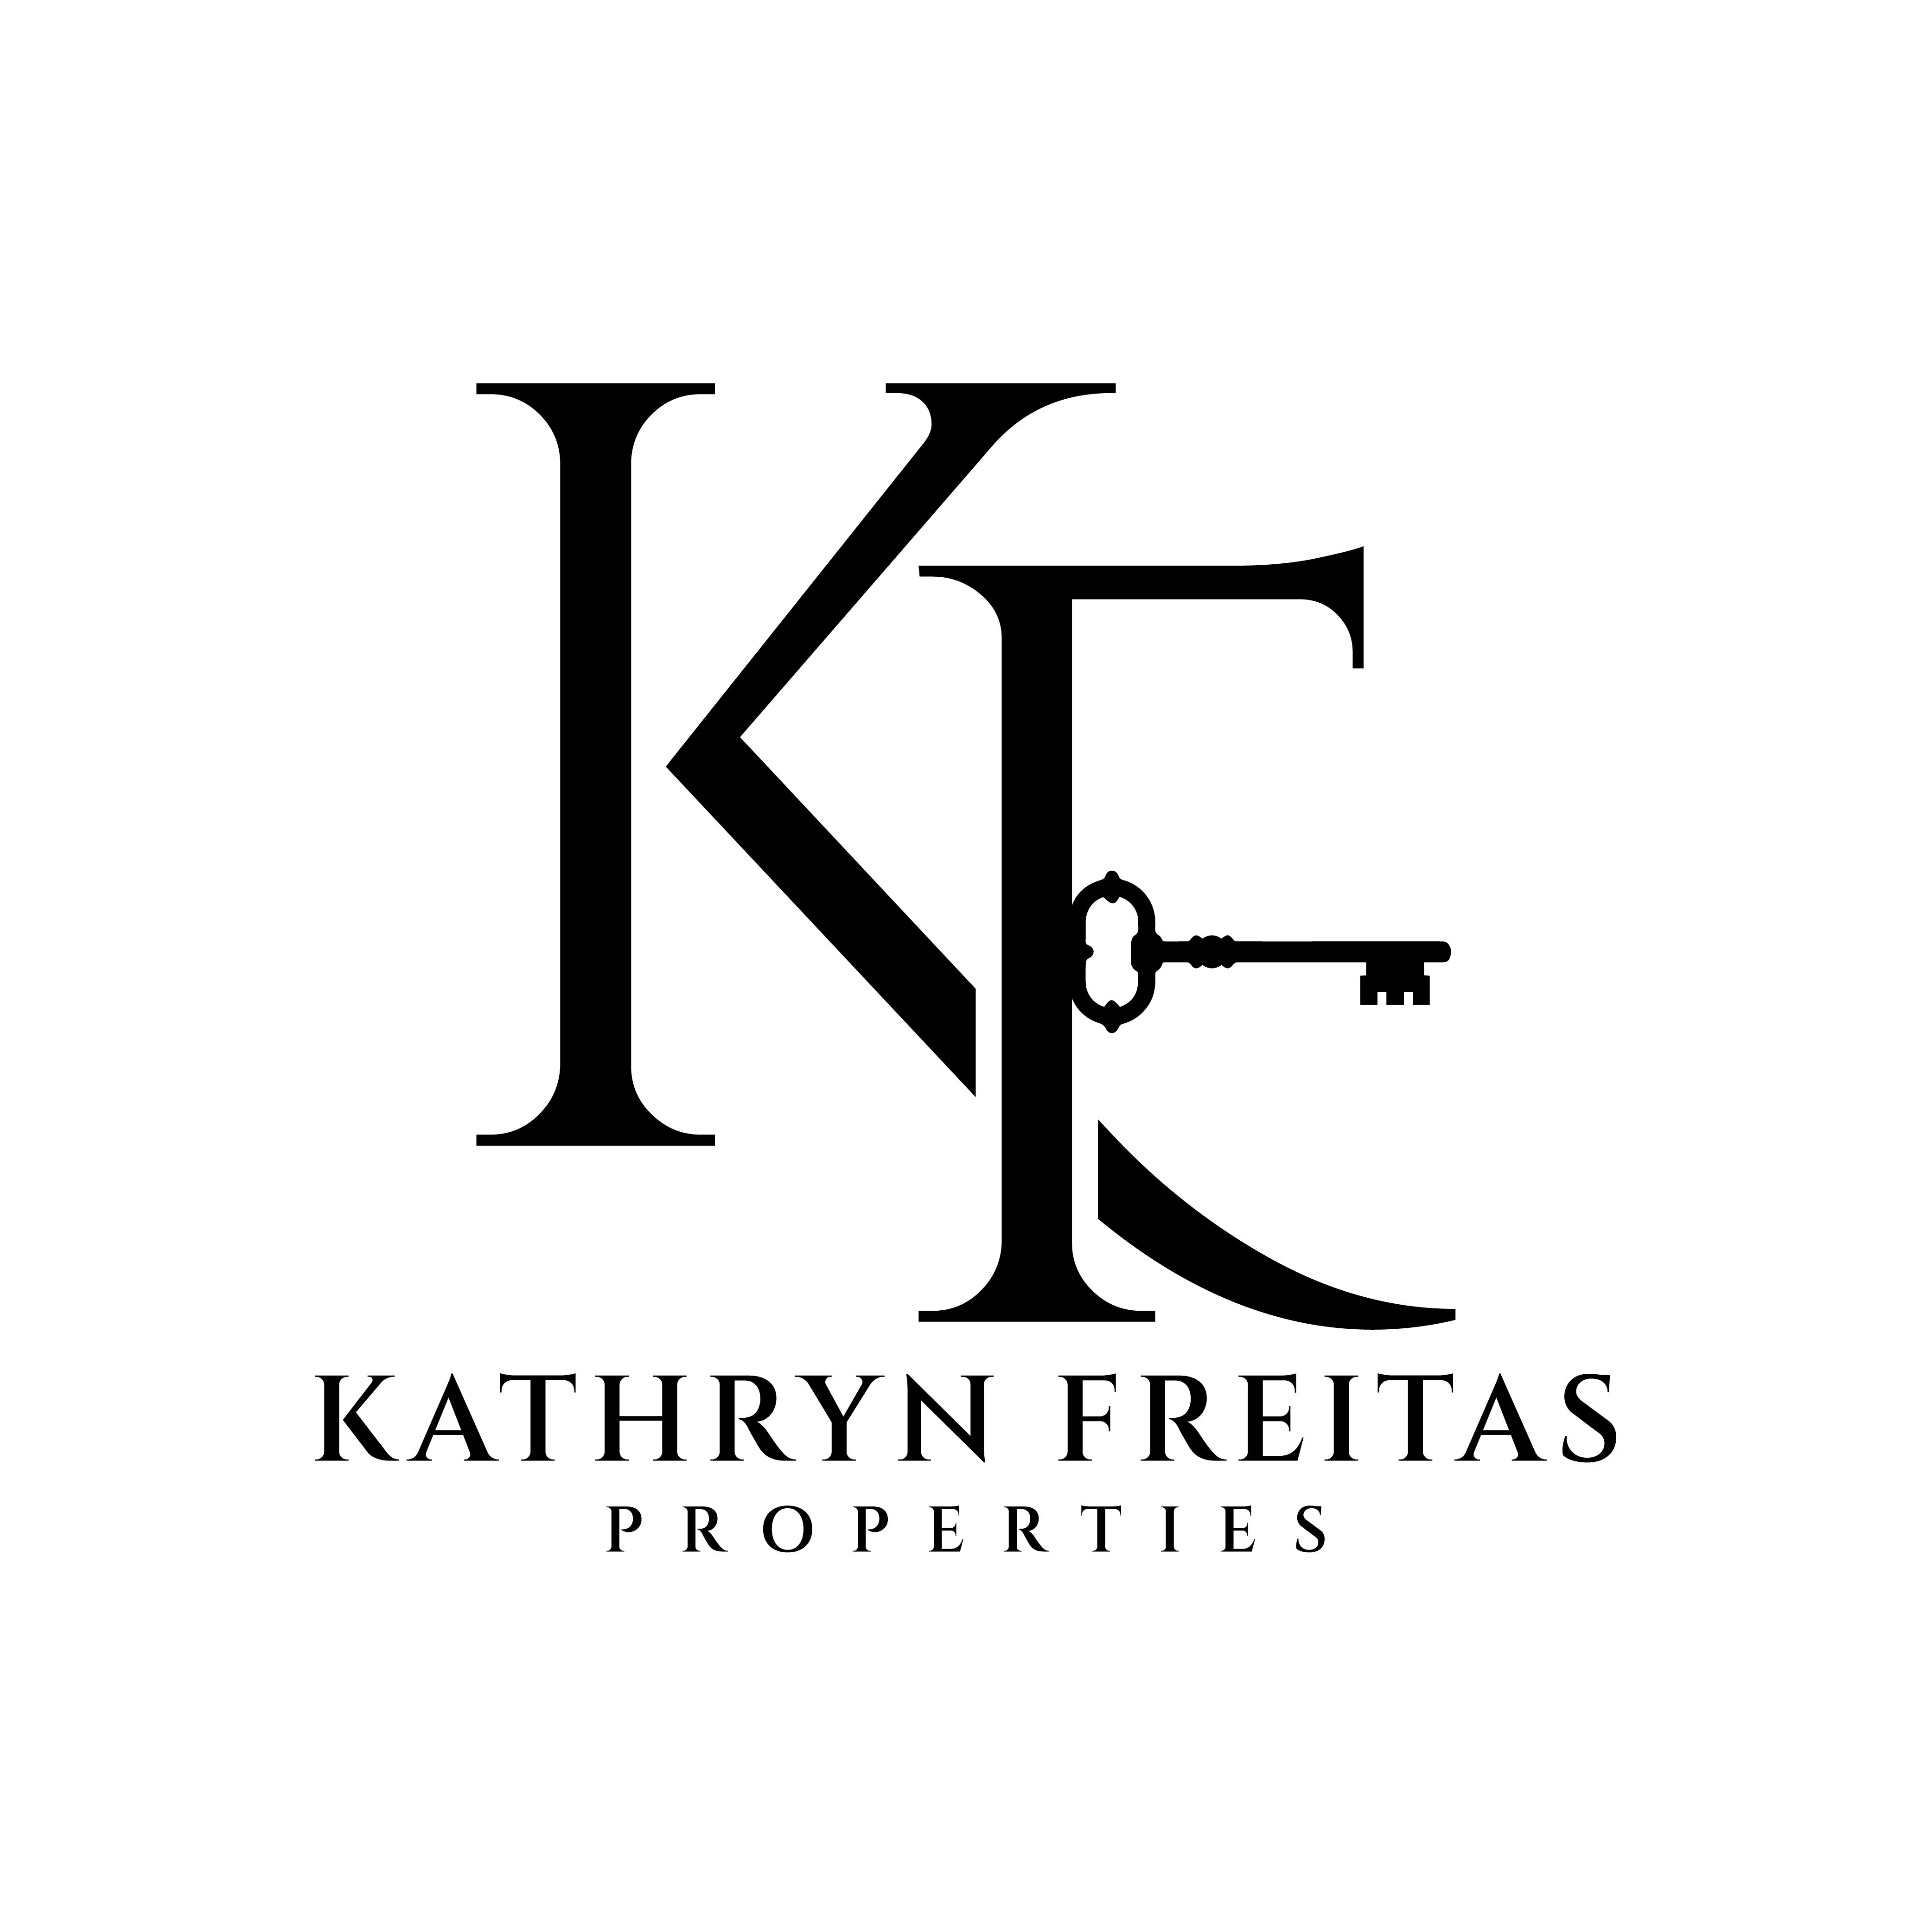 Kathryn Freitas